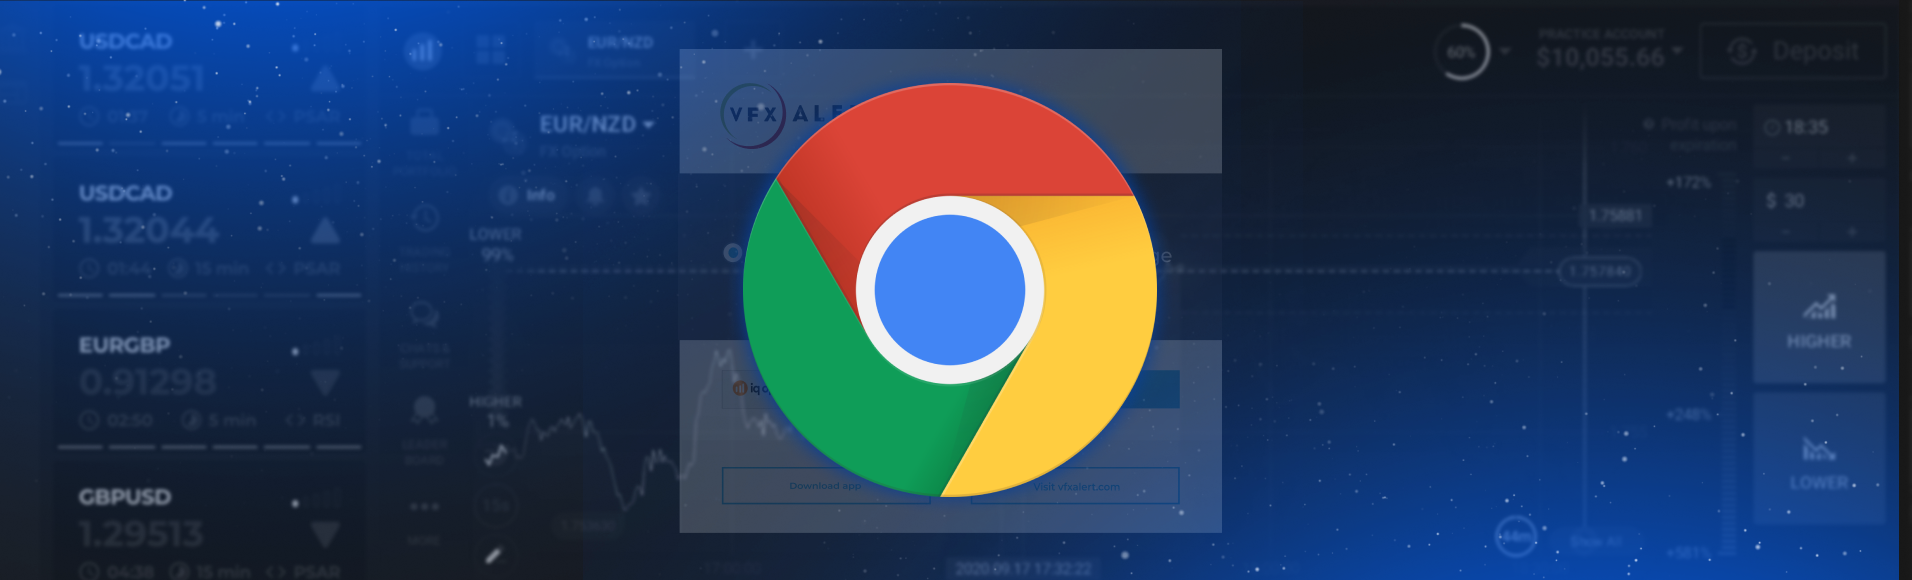 Sinais vfxAlert no navegador Chrome